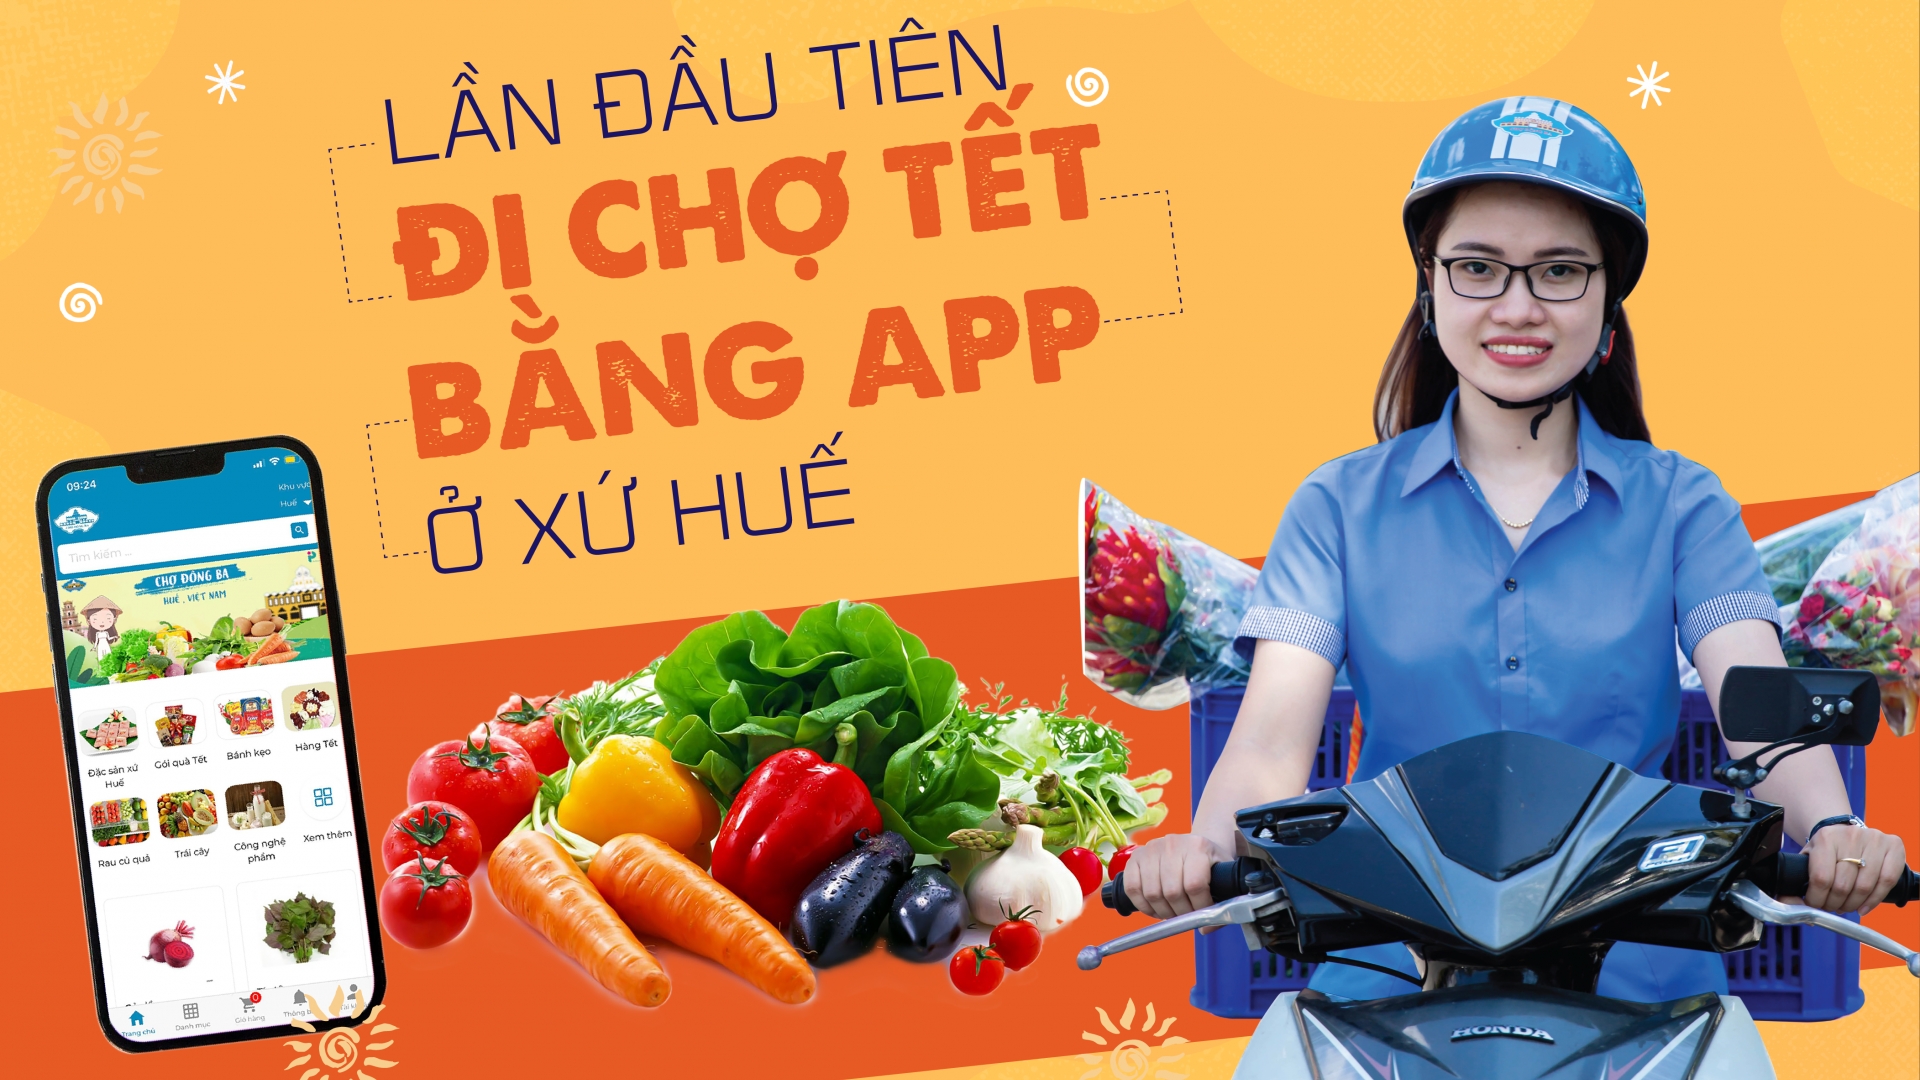 Đi chợ Tết bằng app đầu tiên ở xứ Huế